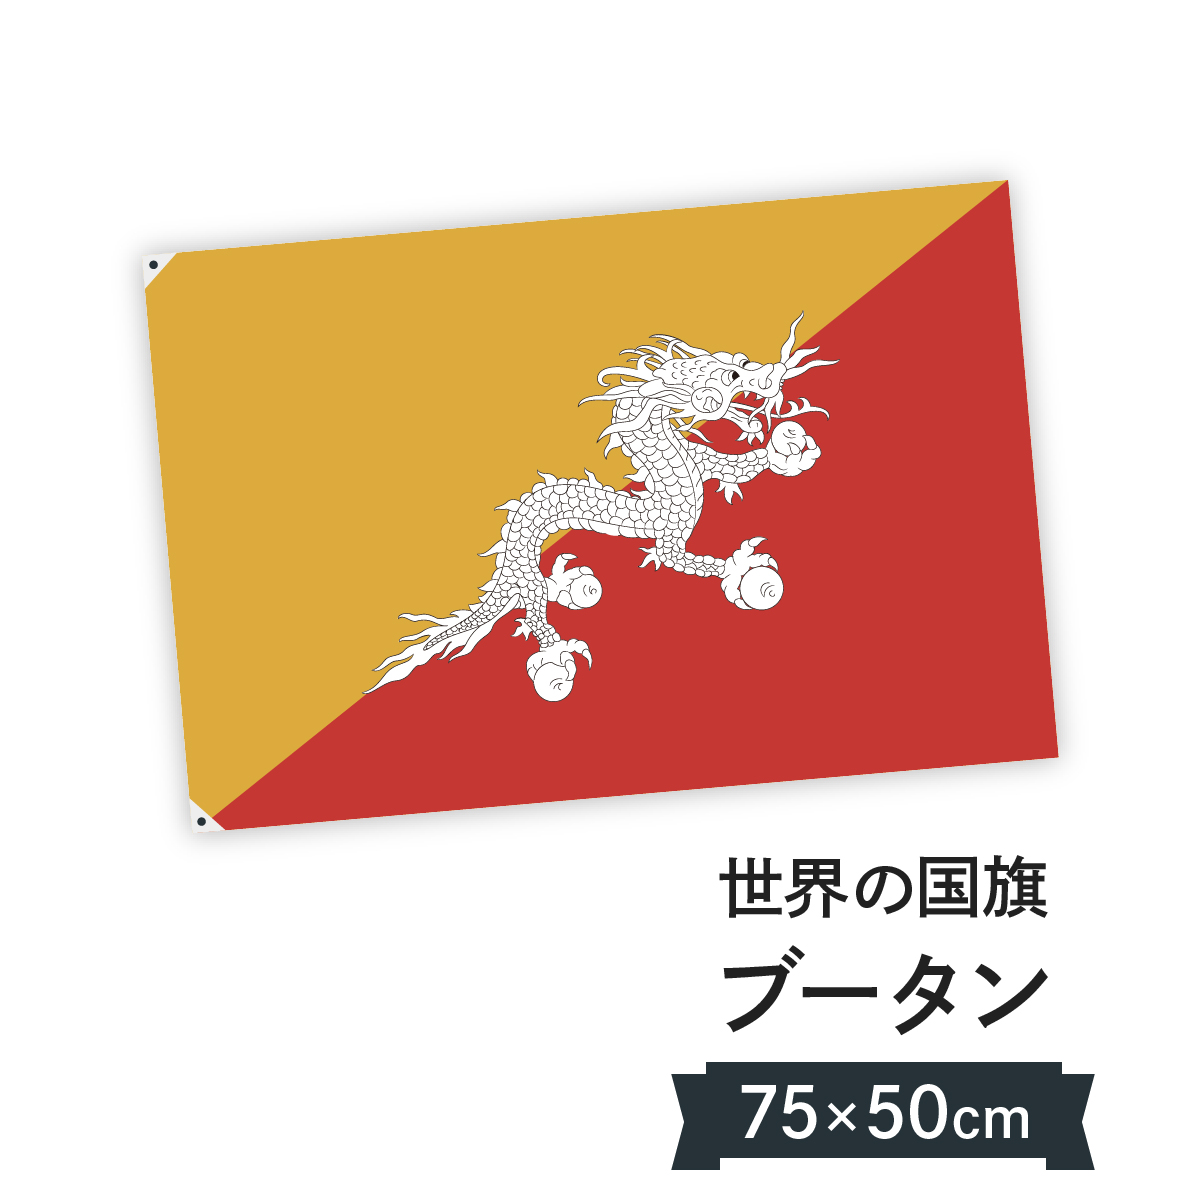 楽天市場 ブータン王国 国旗 W75cm H50cm グッズプロ